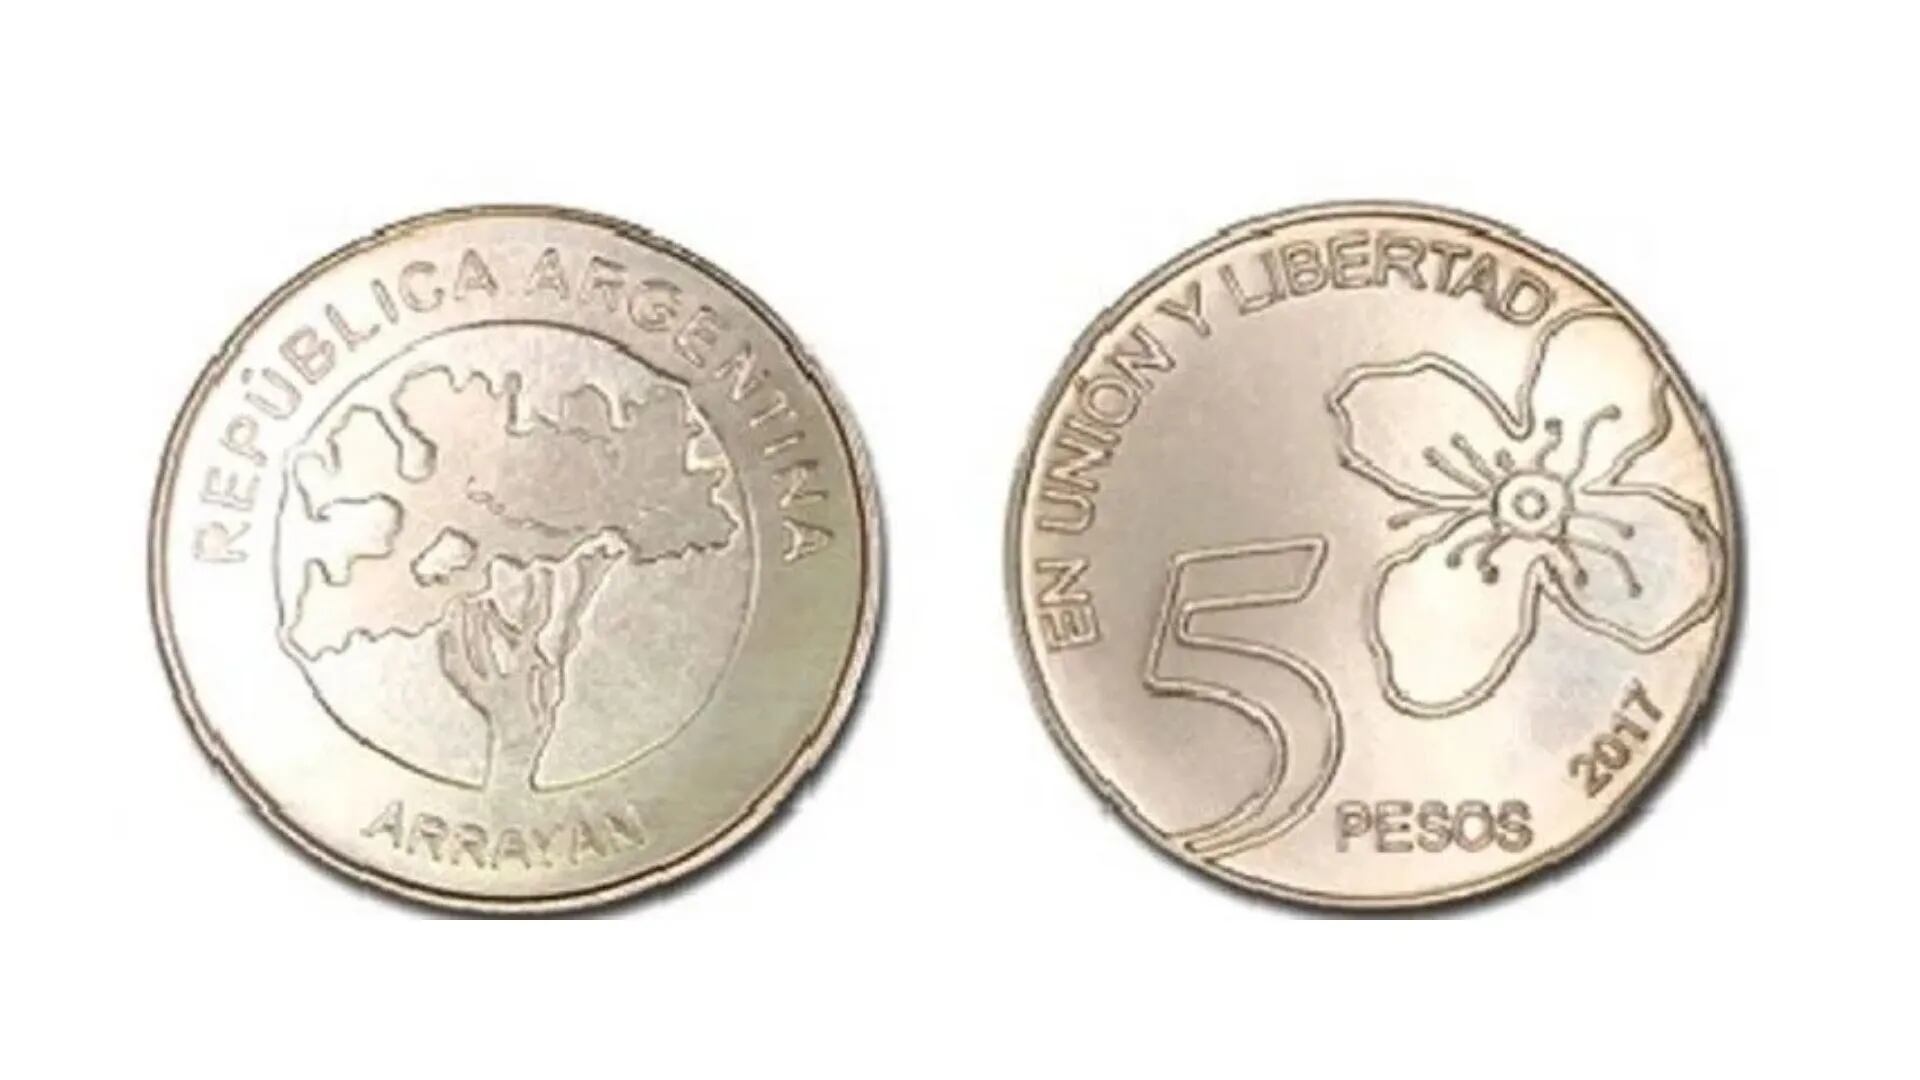 Pagan hasta $50.000 por monedas de $5 con errores de impresión: cómo identificarlas